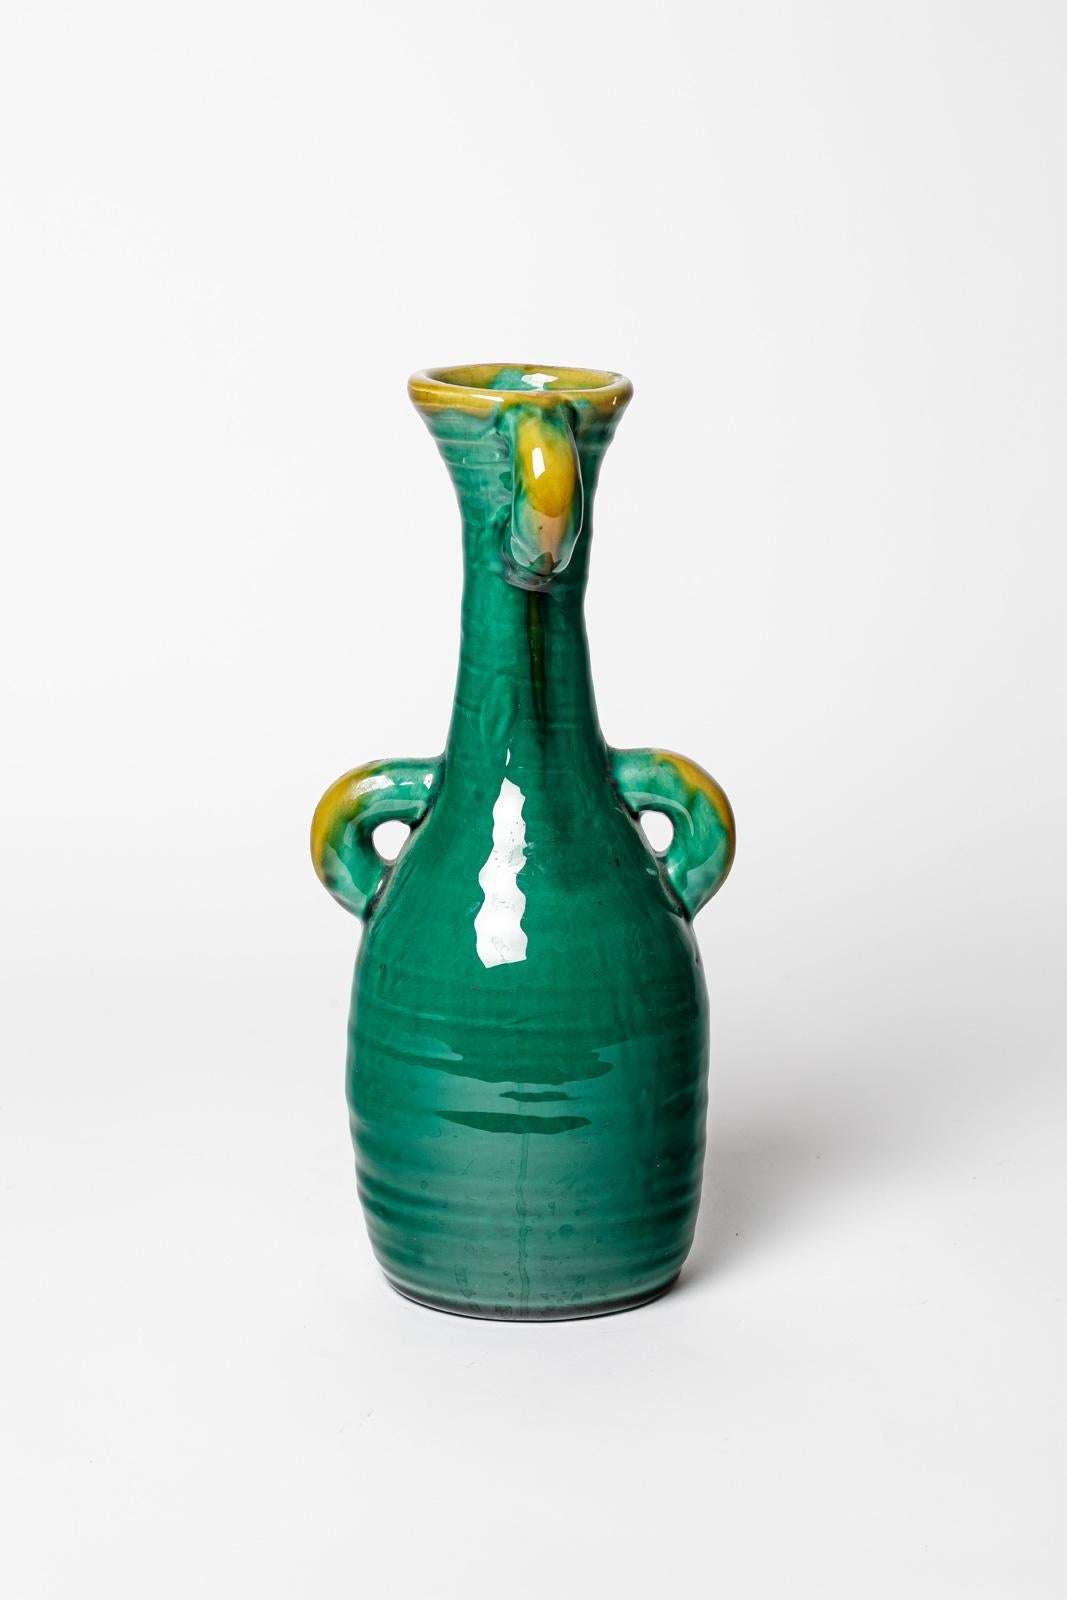 Accolay 

Vase en céramique abstraite design du 20e siècle

Circa 1960

Couleurs des émaux céramiques jaunes et verts

Condition originale parfaite.

Signé 

hauteur 29 cm
Grand 13 cm